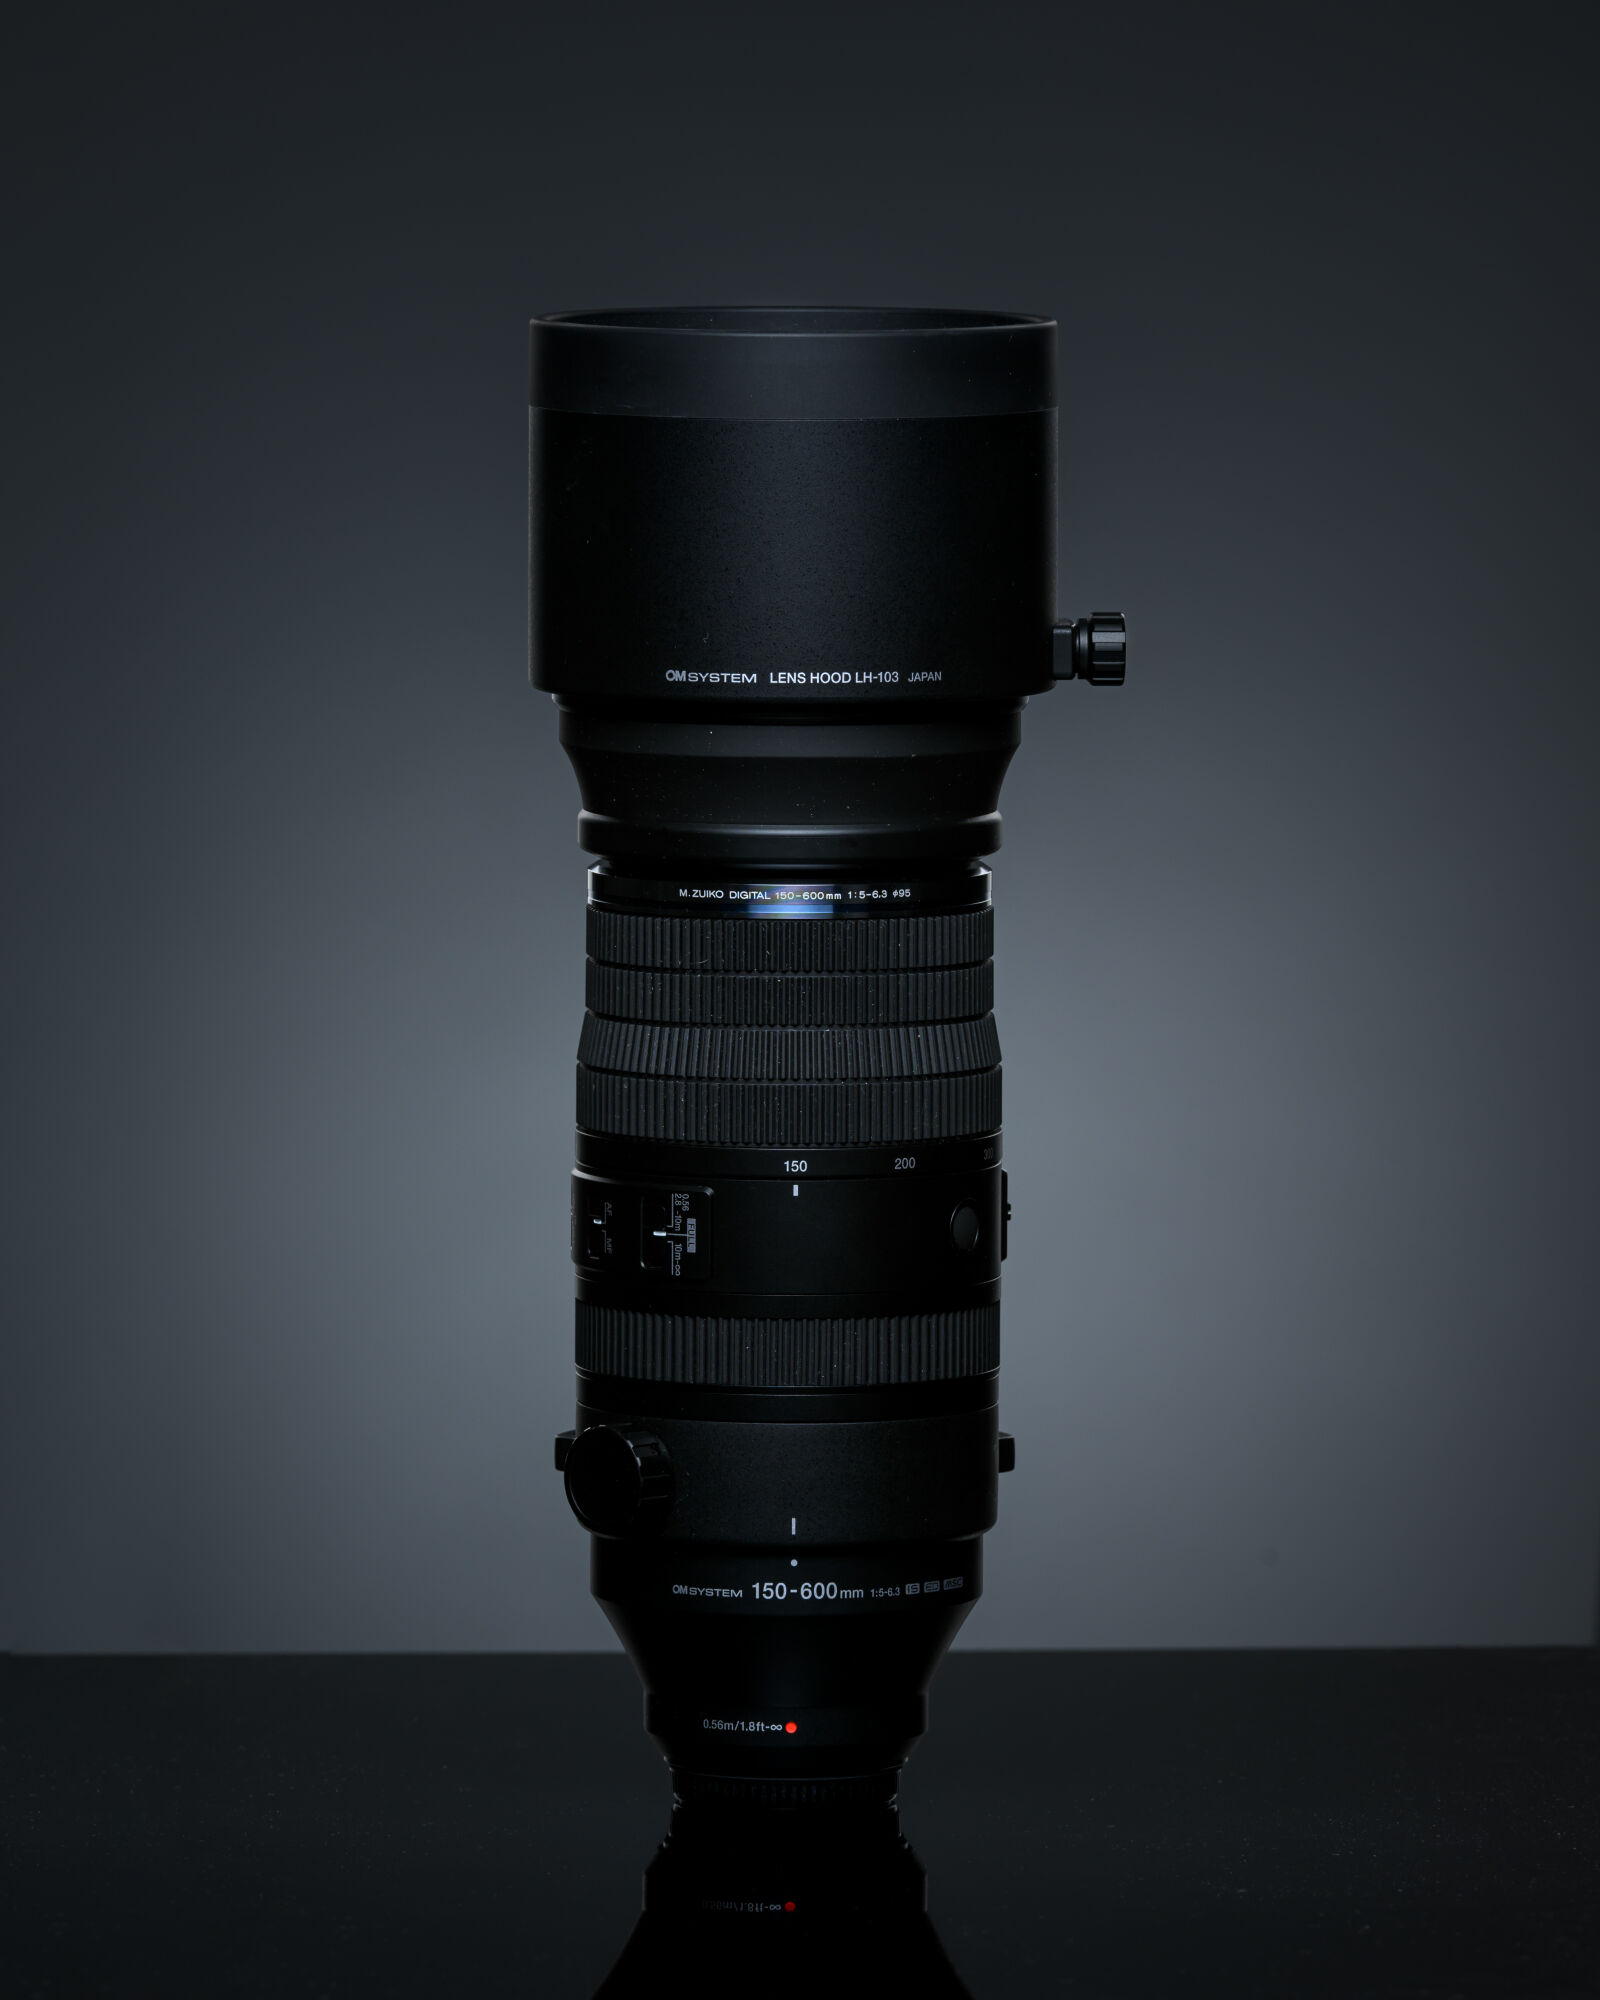 Nikon AF-S Nikkor 200-400mm F4G ED-IF VR sample photo. Om system m.zuiko digital photography